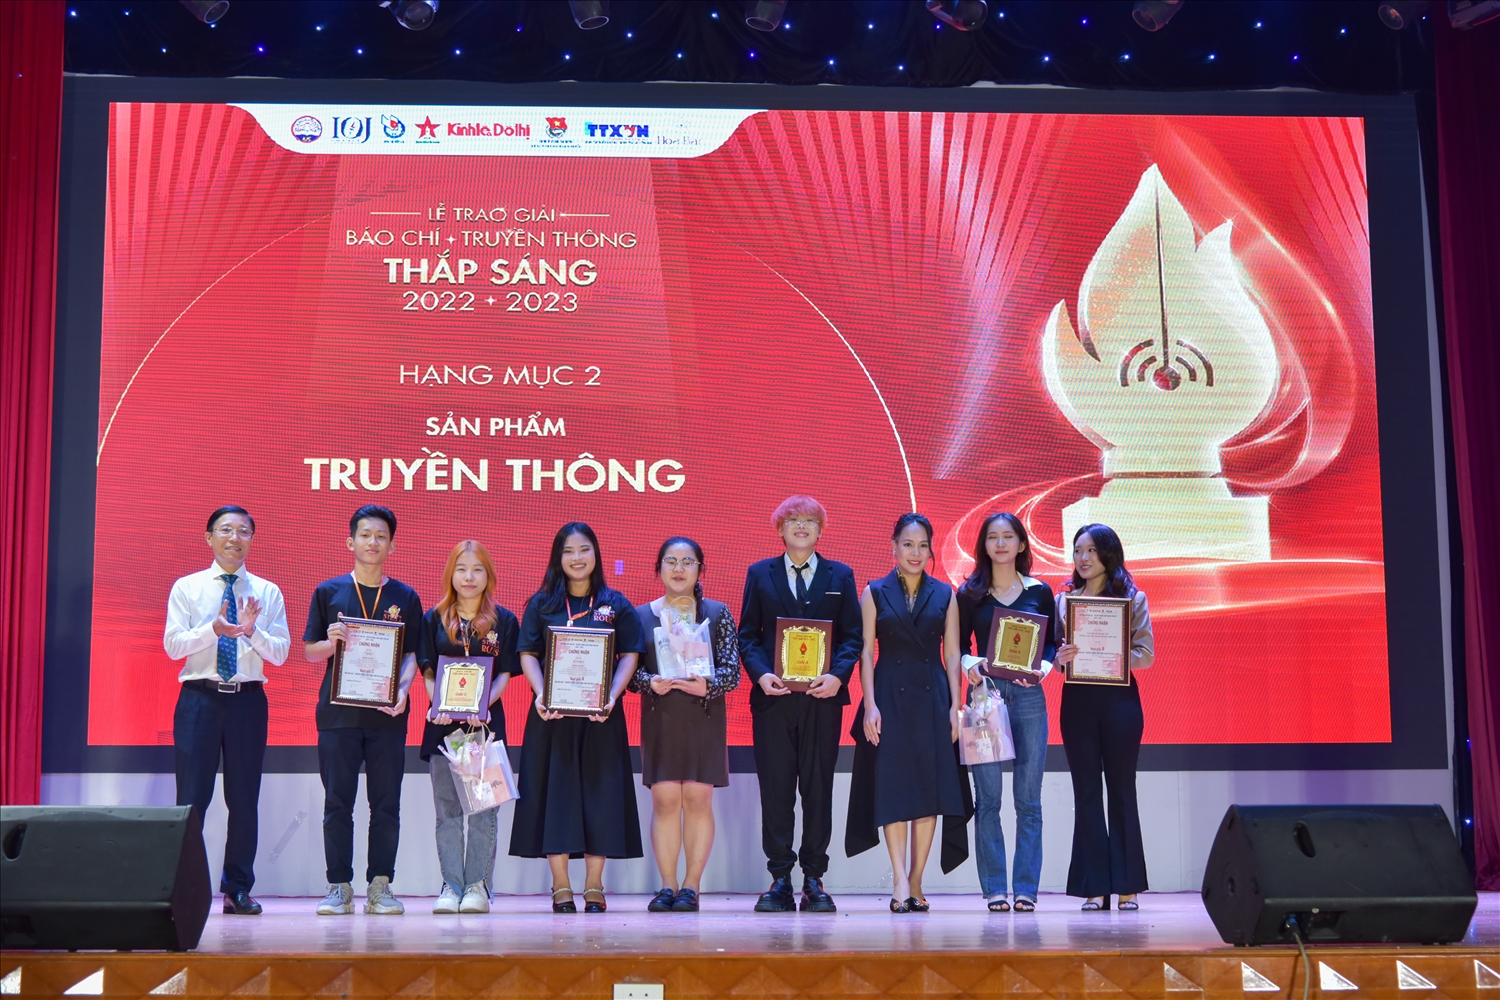 TS Nguyễn Đức Toàn, Phó giám đốc Học viện Báo chí và Tuyên truyền trao giải hạng mục 2: Sản phảm Truyền thông Thắp sáng